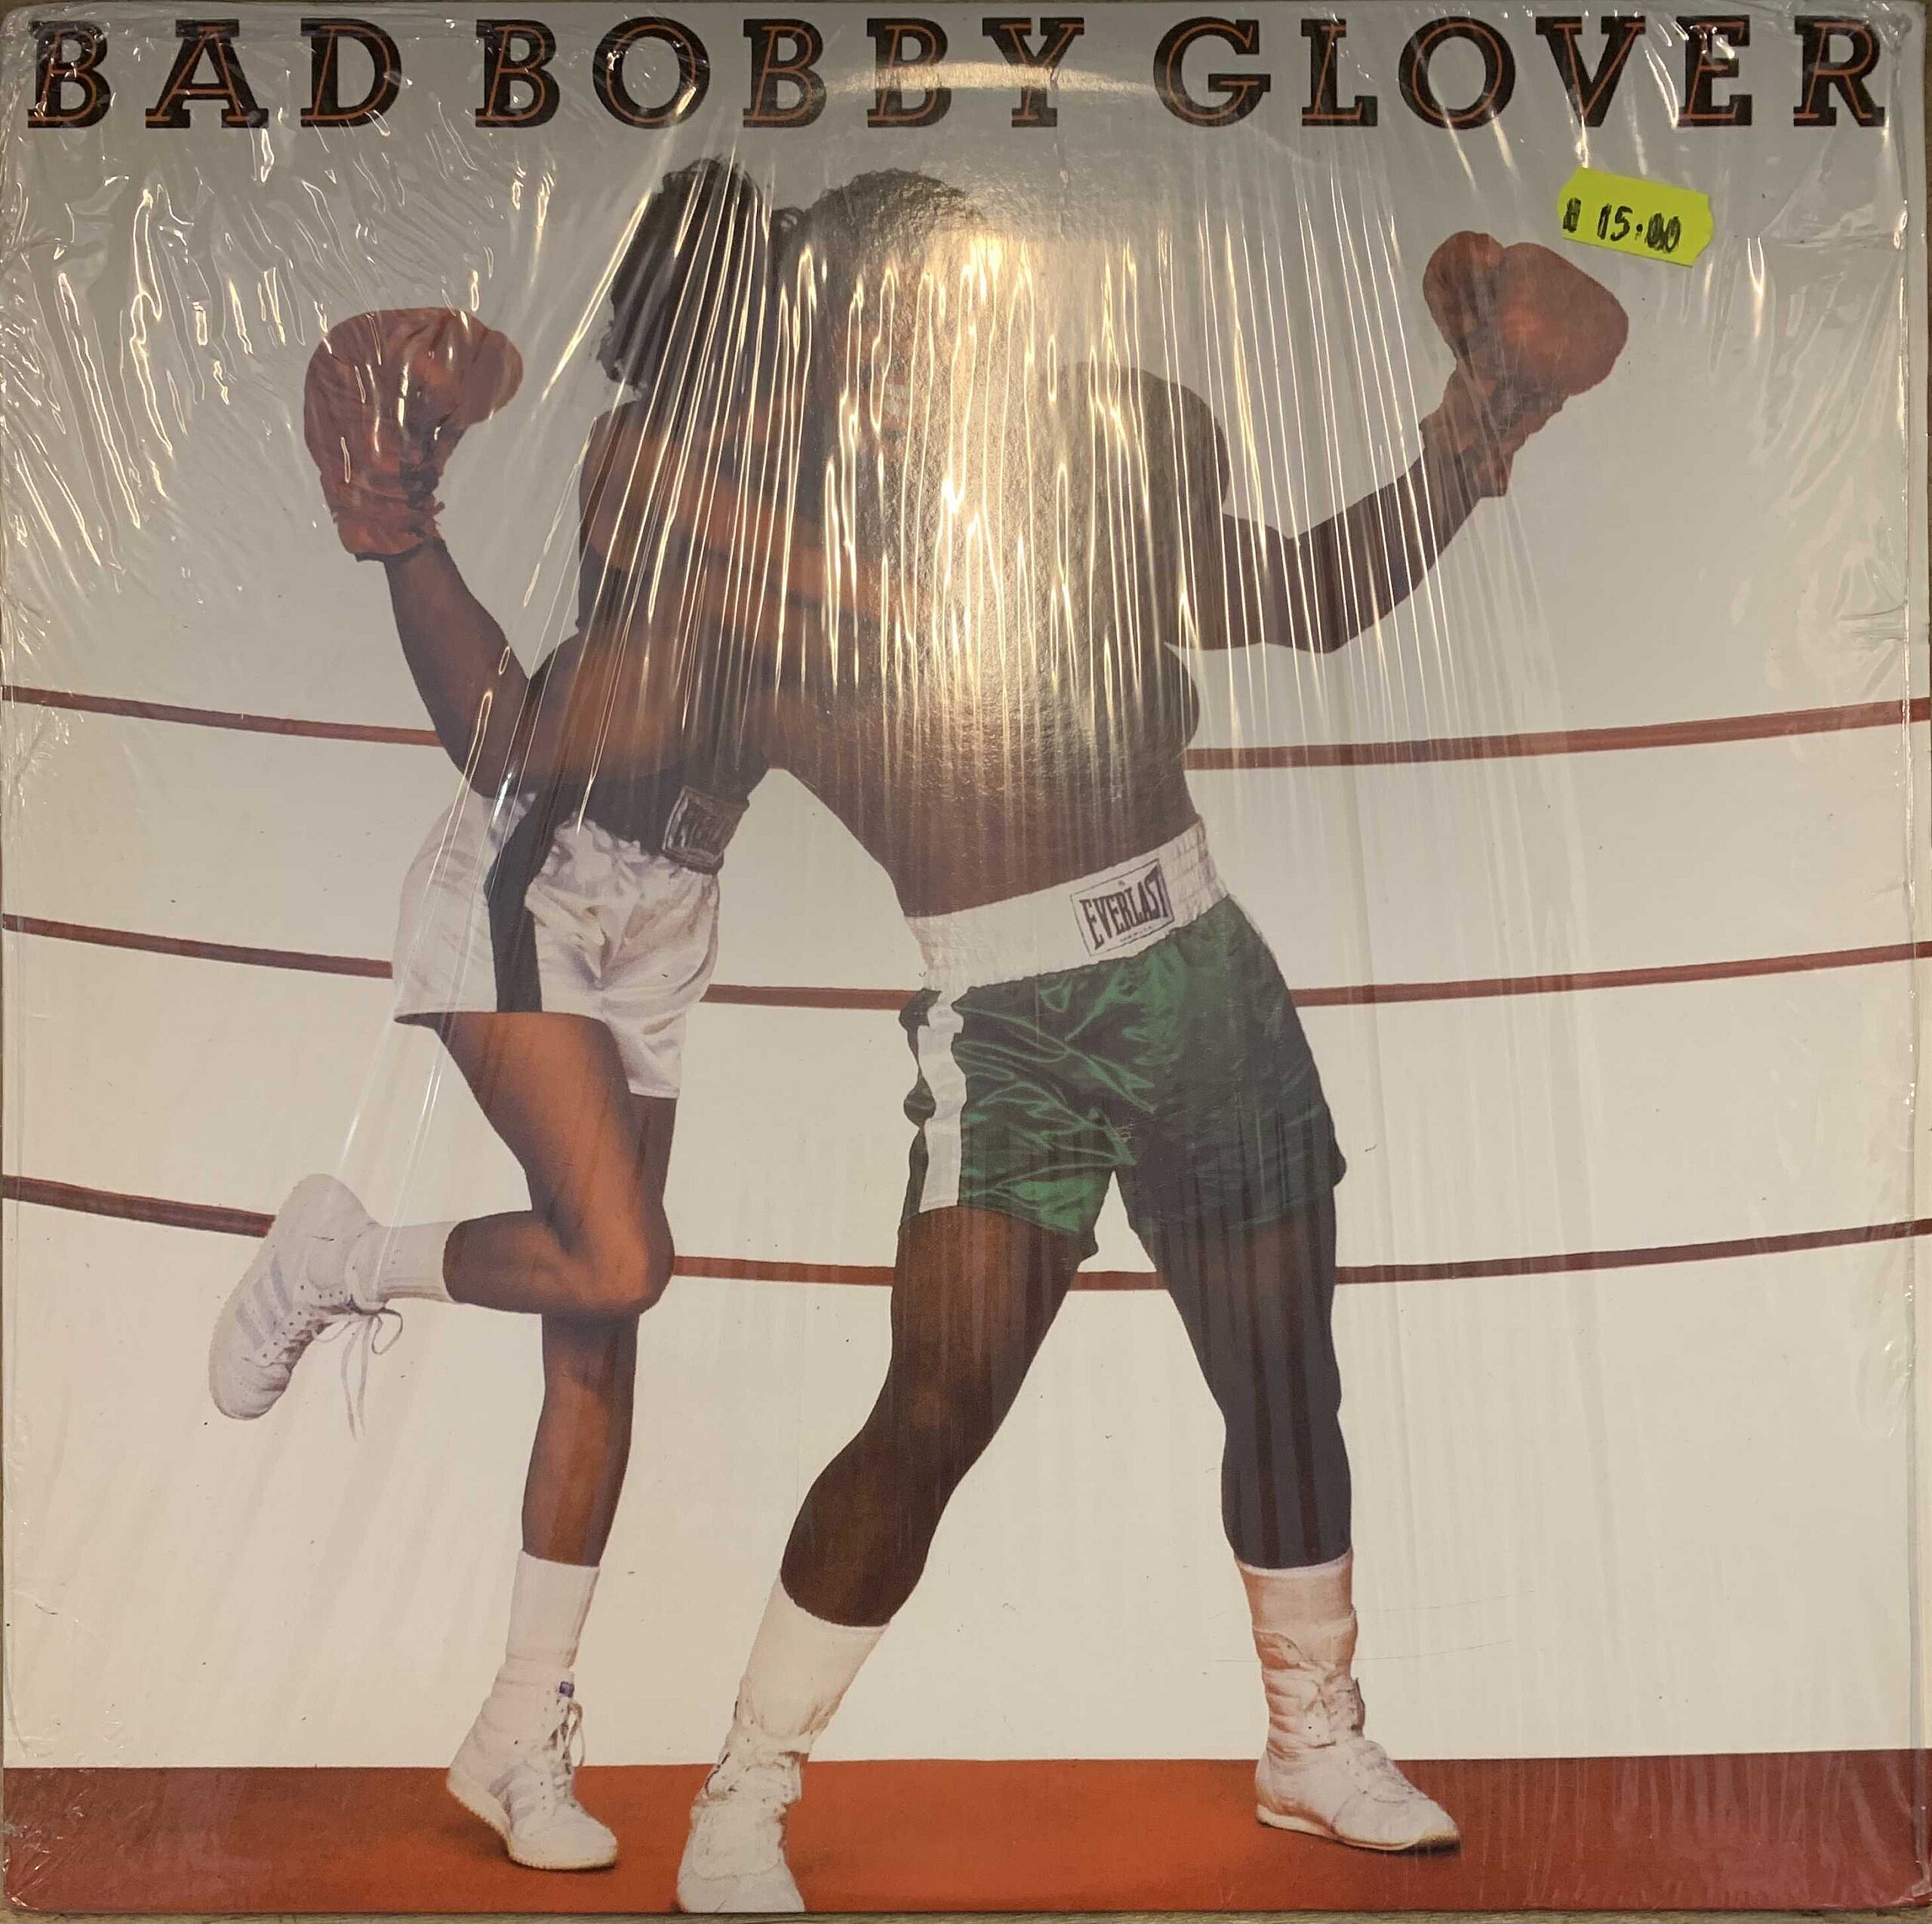 Bad Bobby Glover